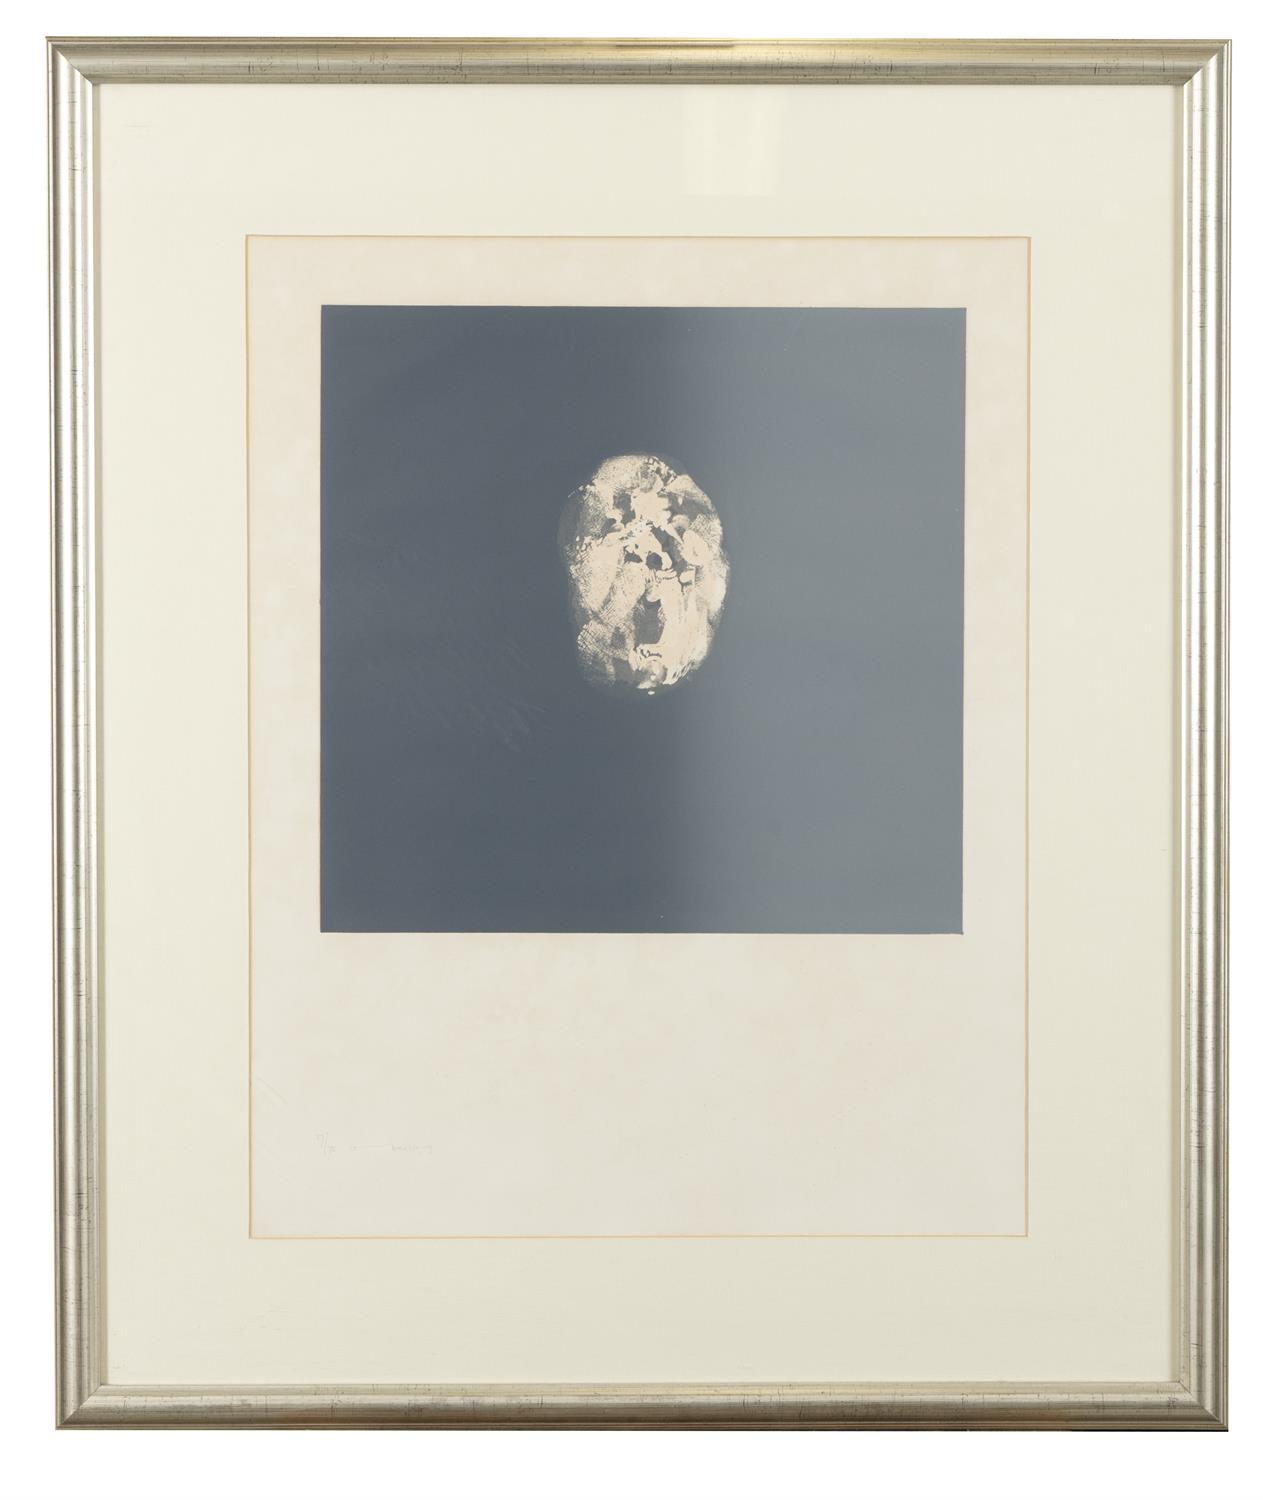 Louis le Brocquy HRHA (1916-2012) Visage a Bouche Ouverte Lithograph, 63 x 48cm (24¾ x - Image 2 of 3